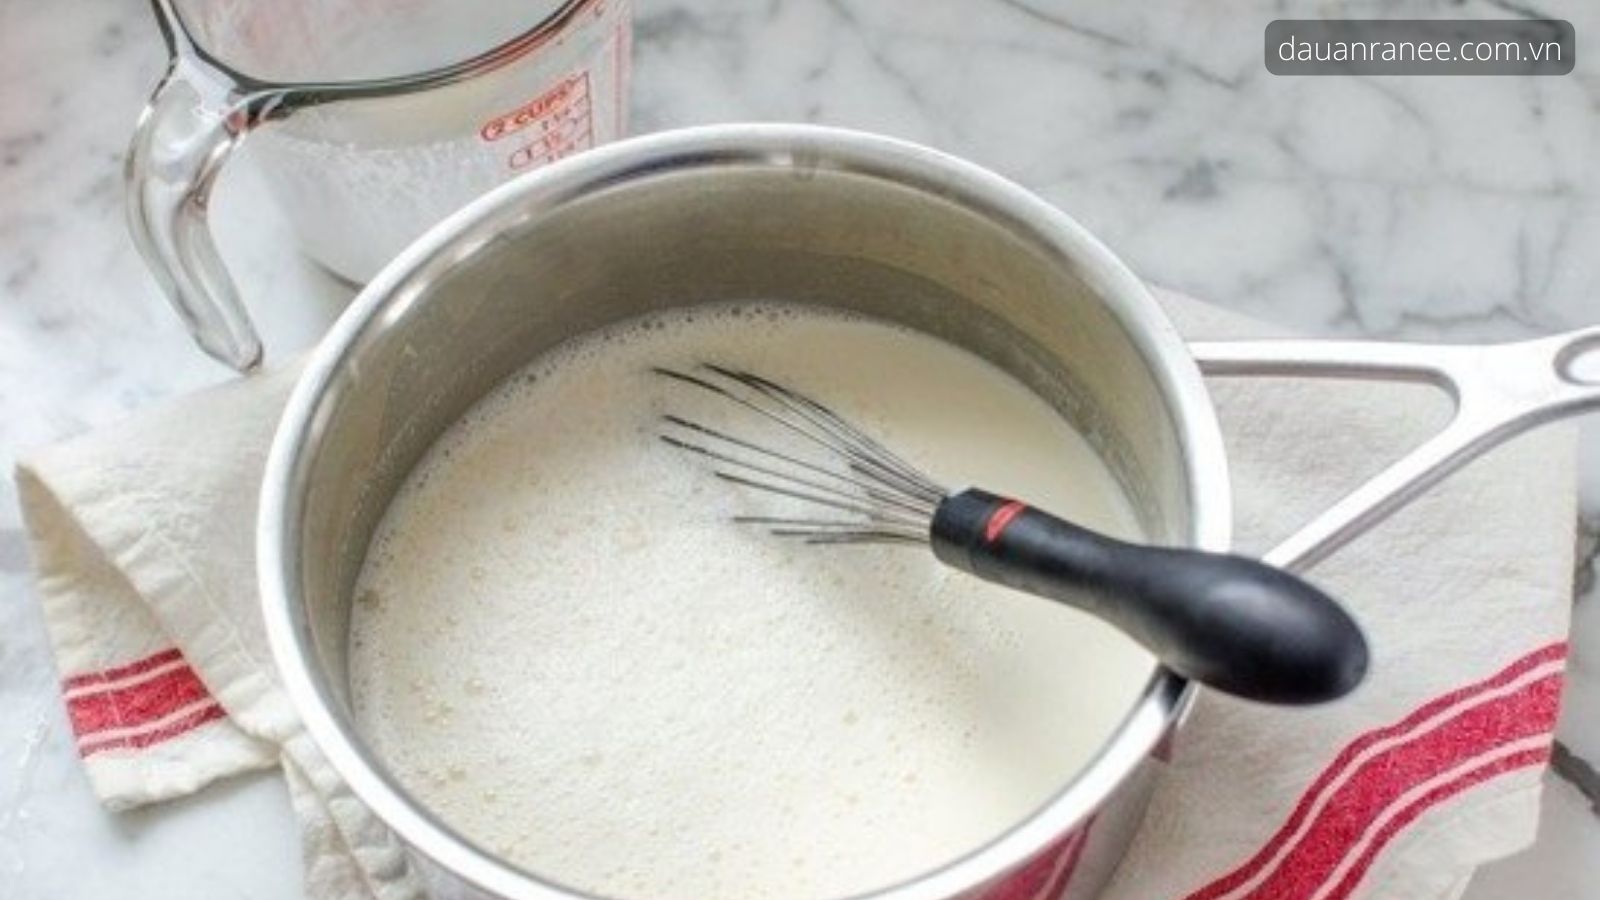 Hướng dẫn làm hỗn hợp trứng sữa - làm bánh flan nhanh